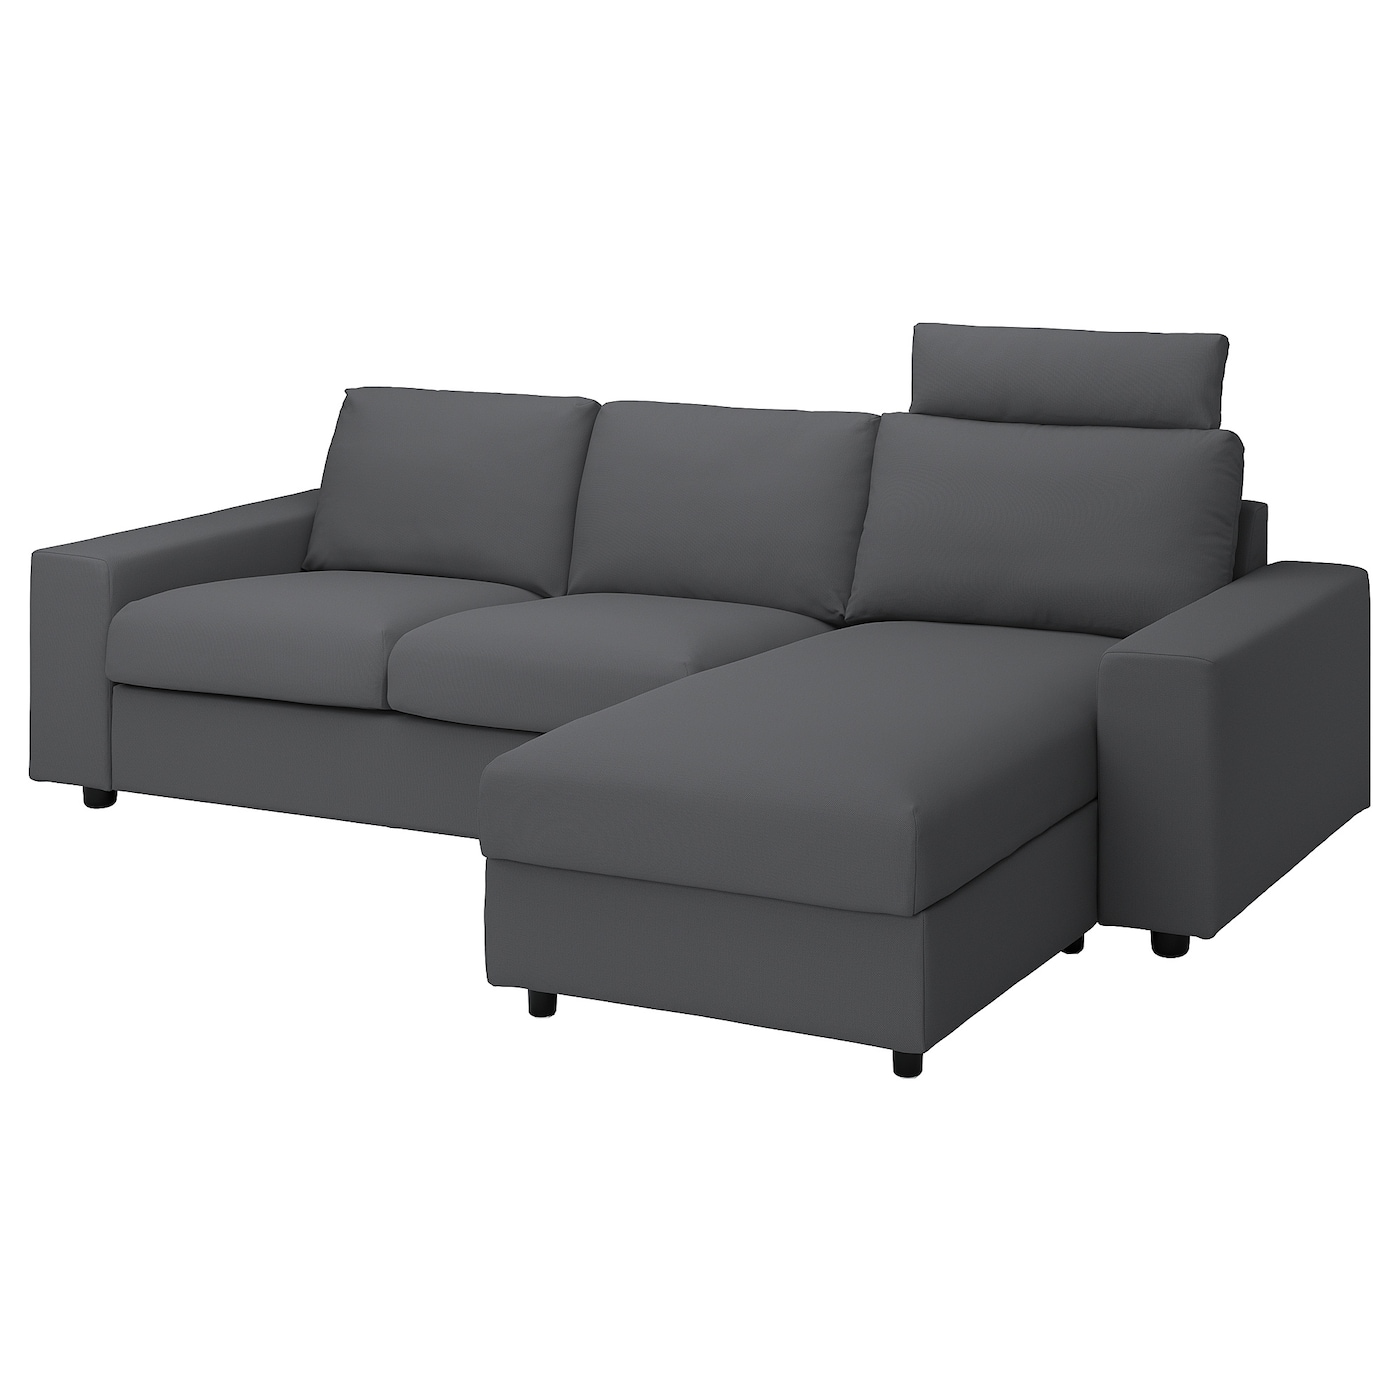 ВИМЛЕ 3-местный диван + диван, с широкими подлокотниками с подголовником/Халларп серый VIMLE IKEA диван прямой смарт mille 09 3 х местный с подлокотниками еврокнижка а2491530061